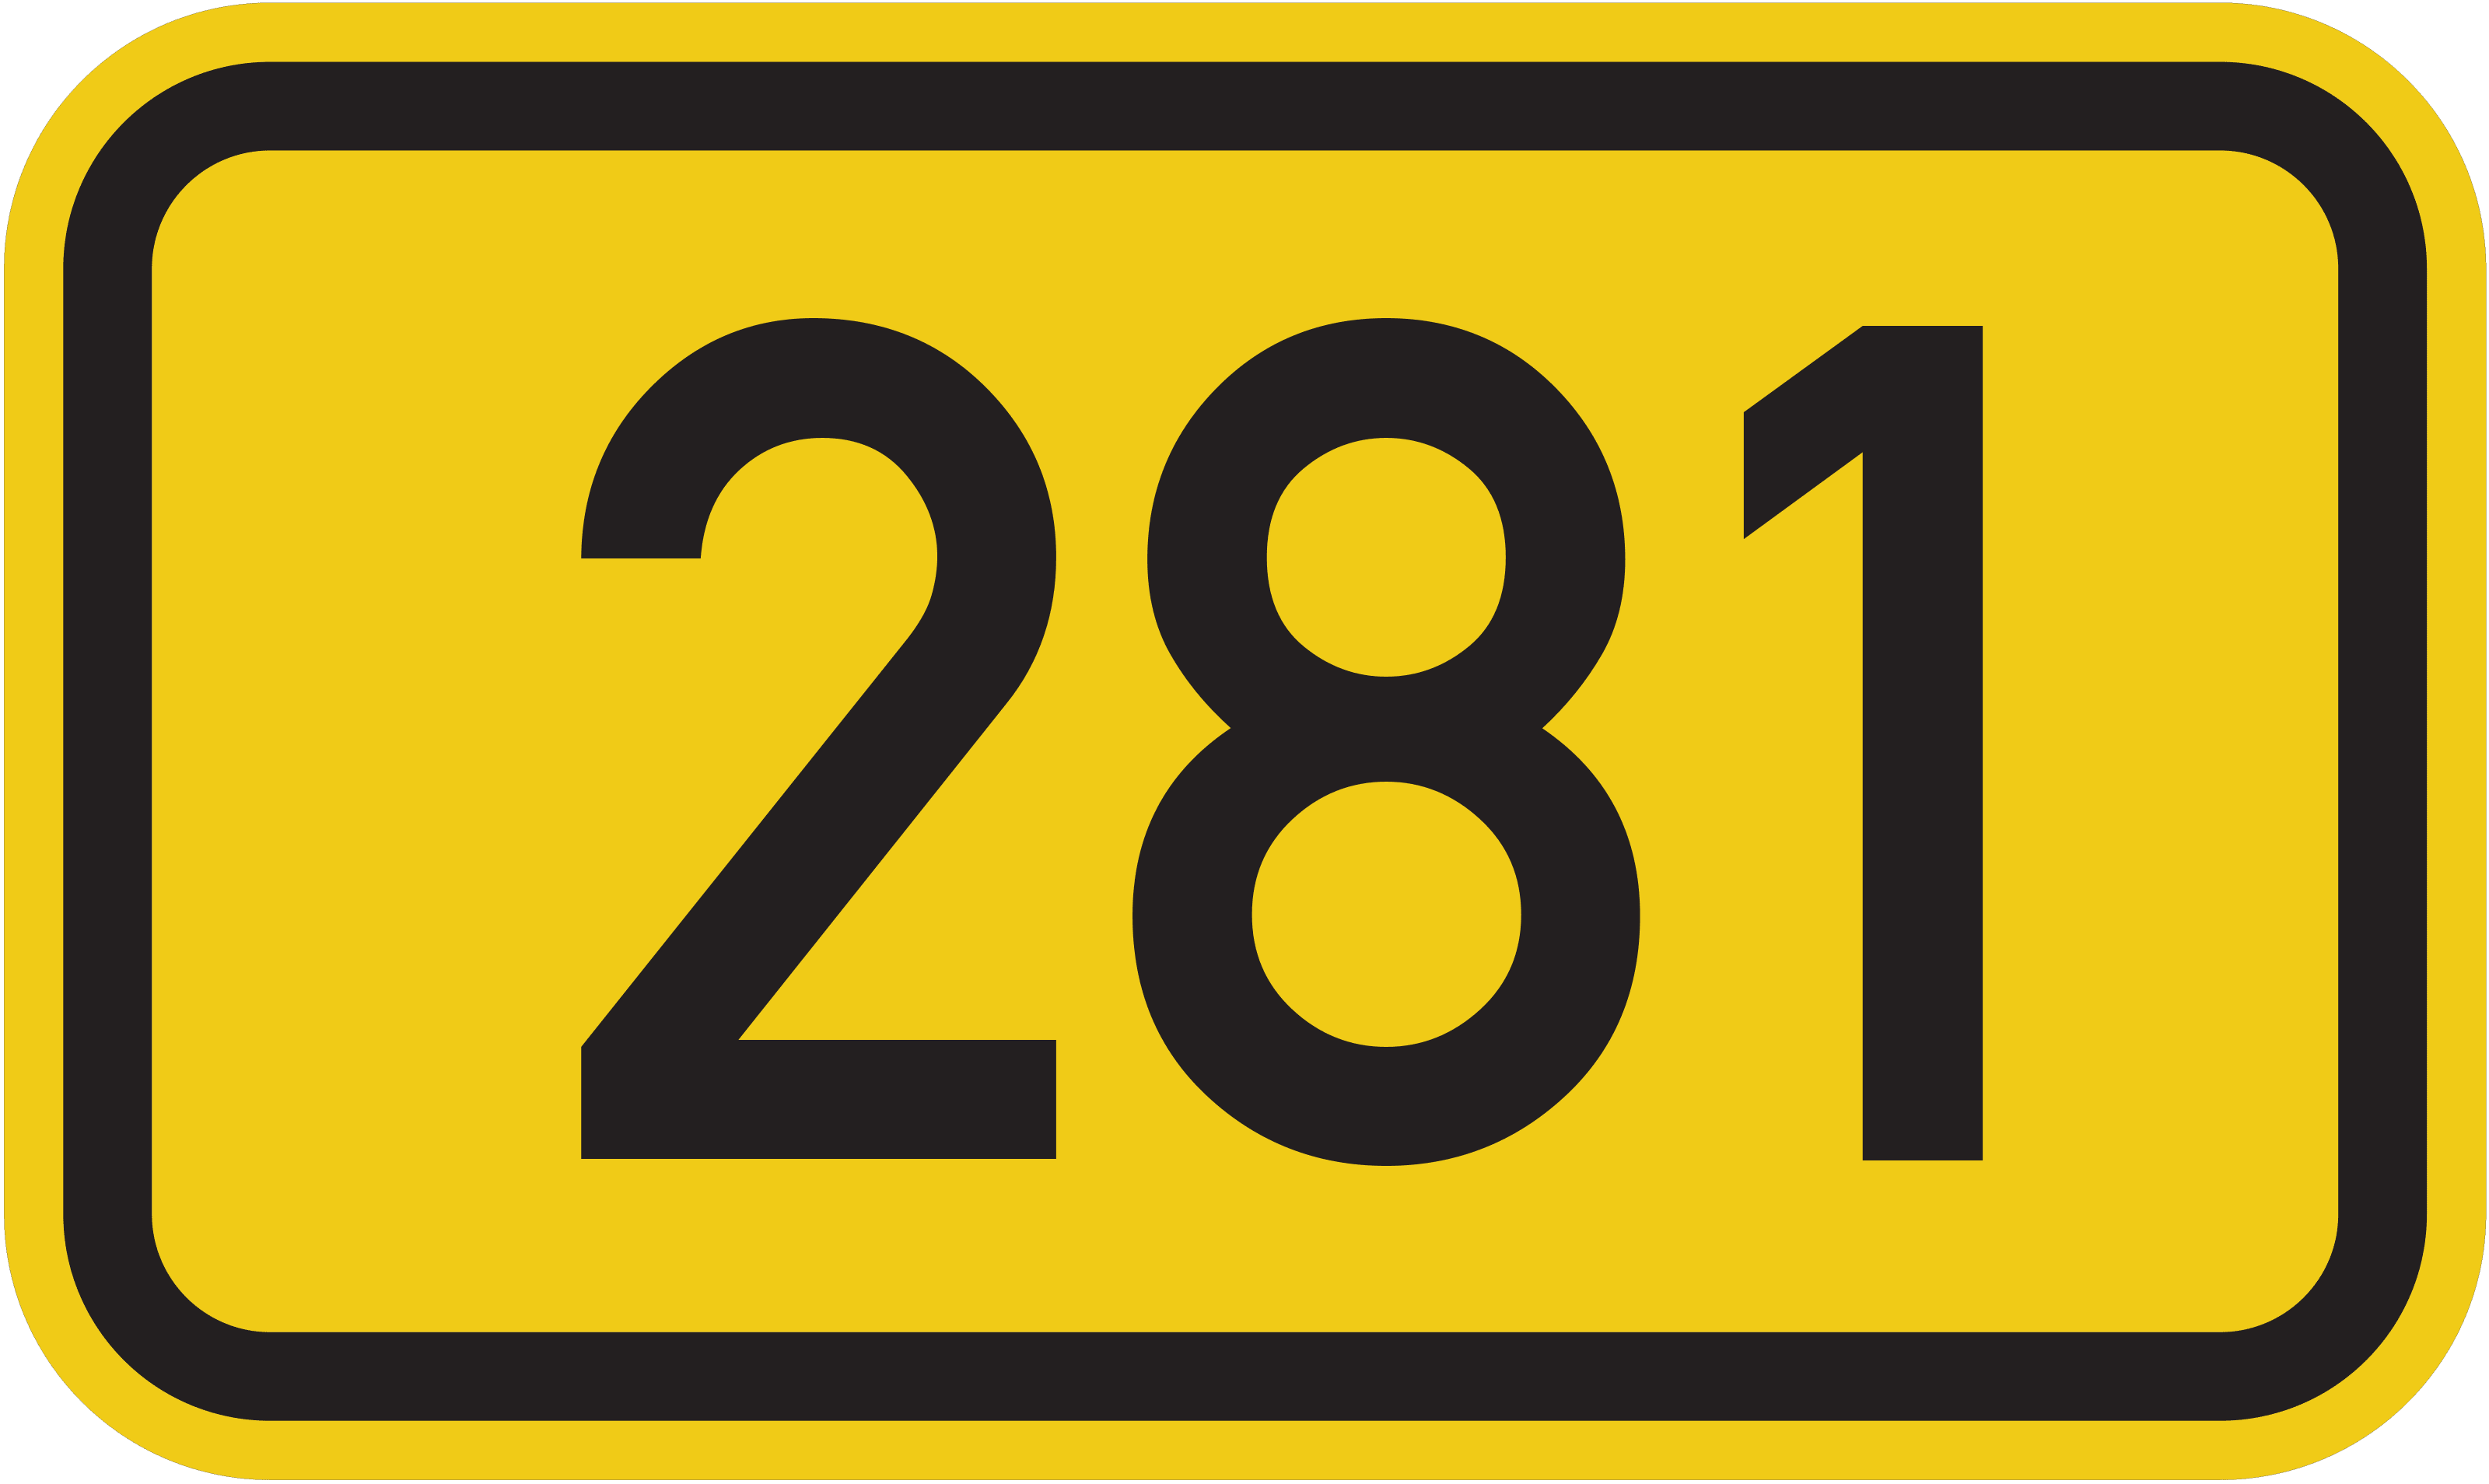 Bundesstraße B 281